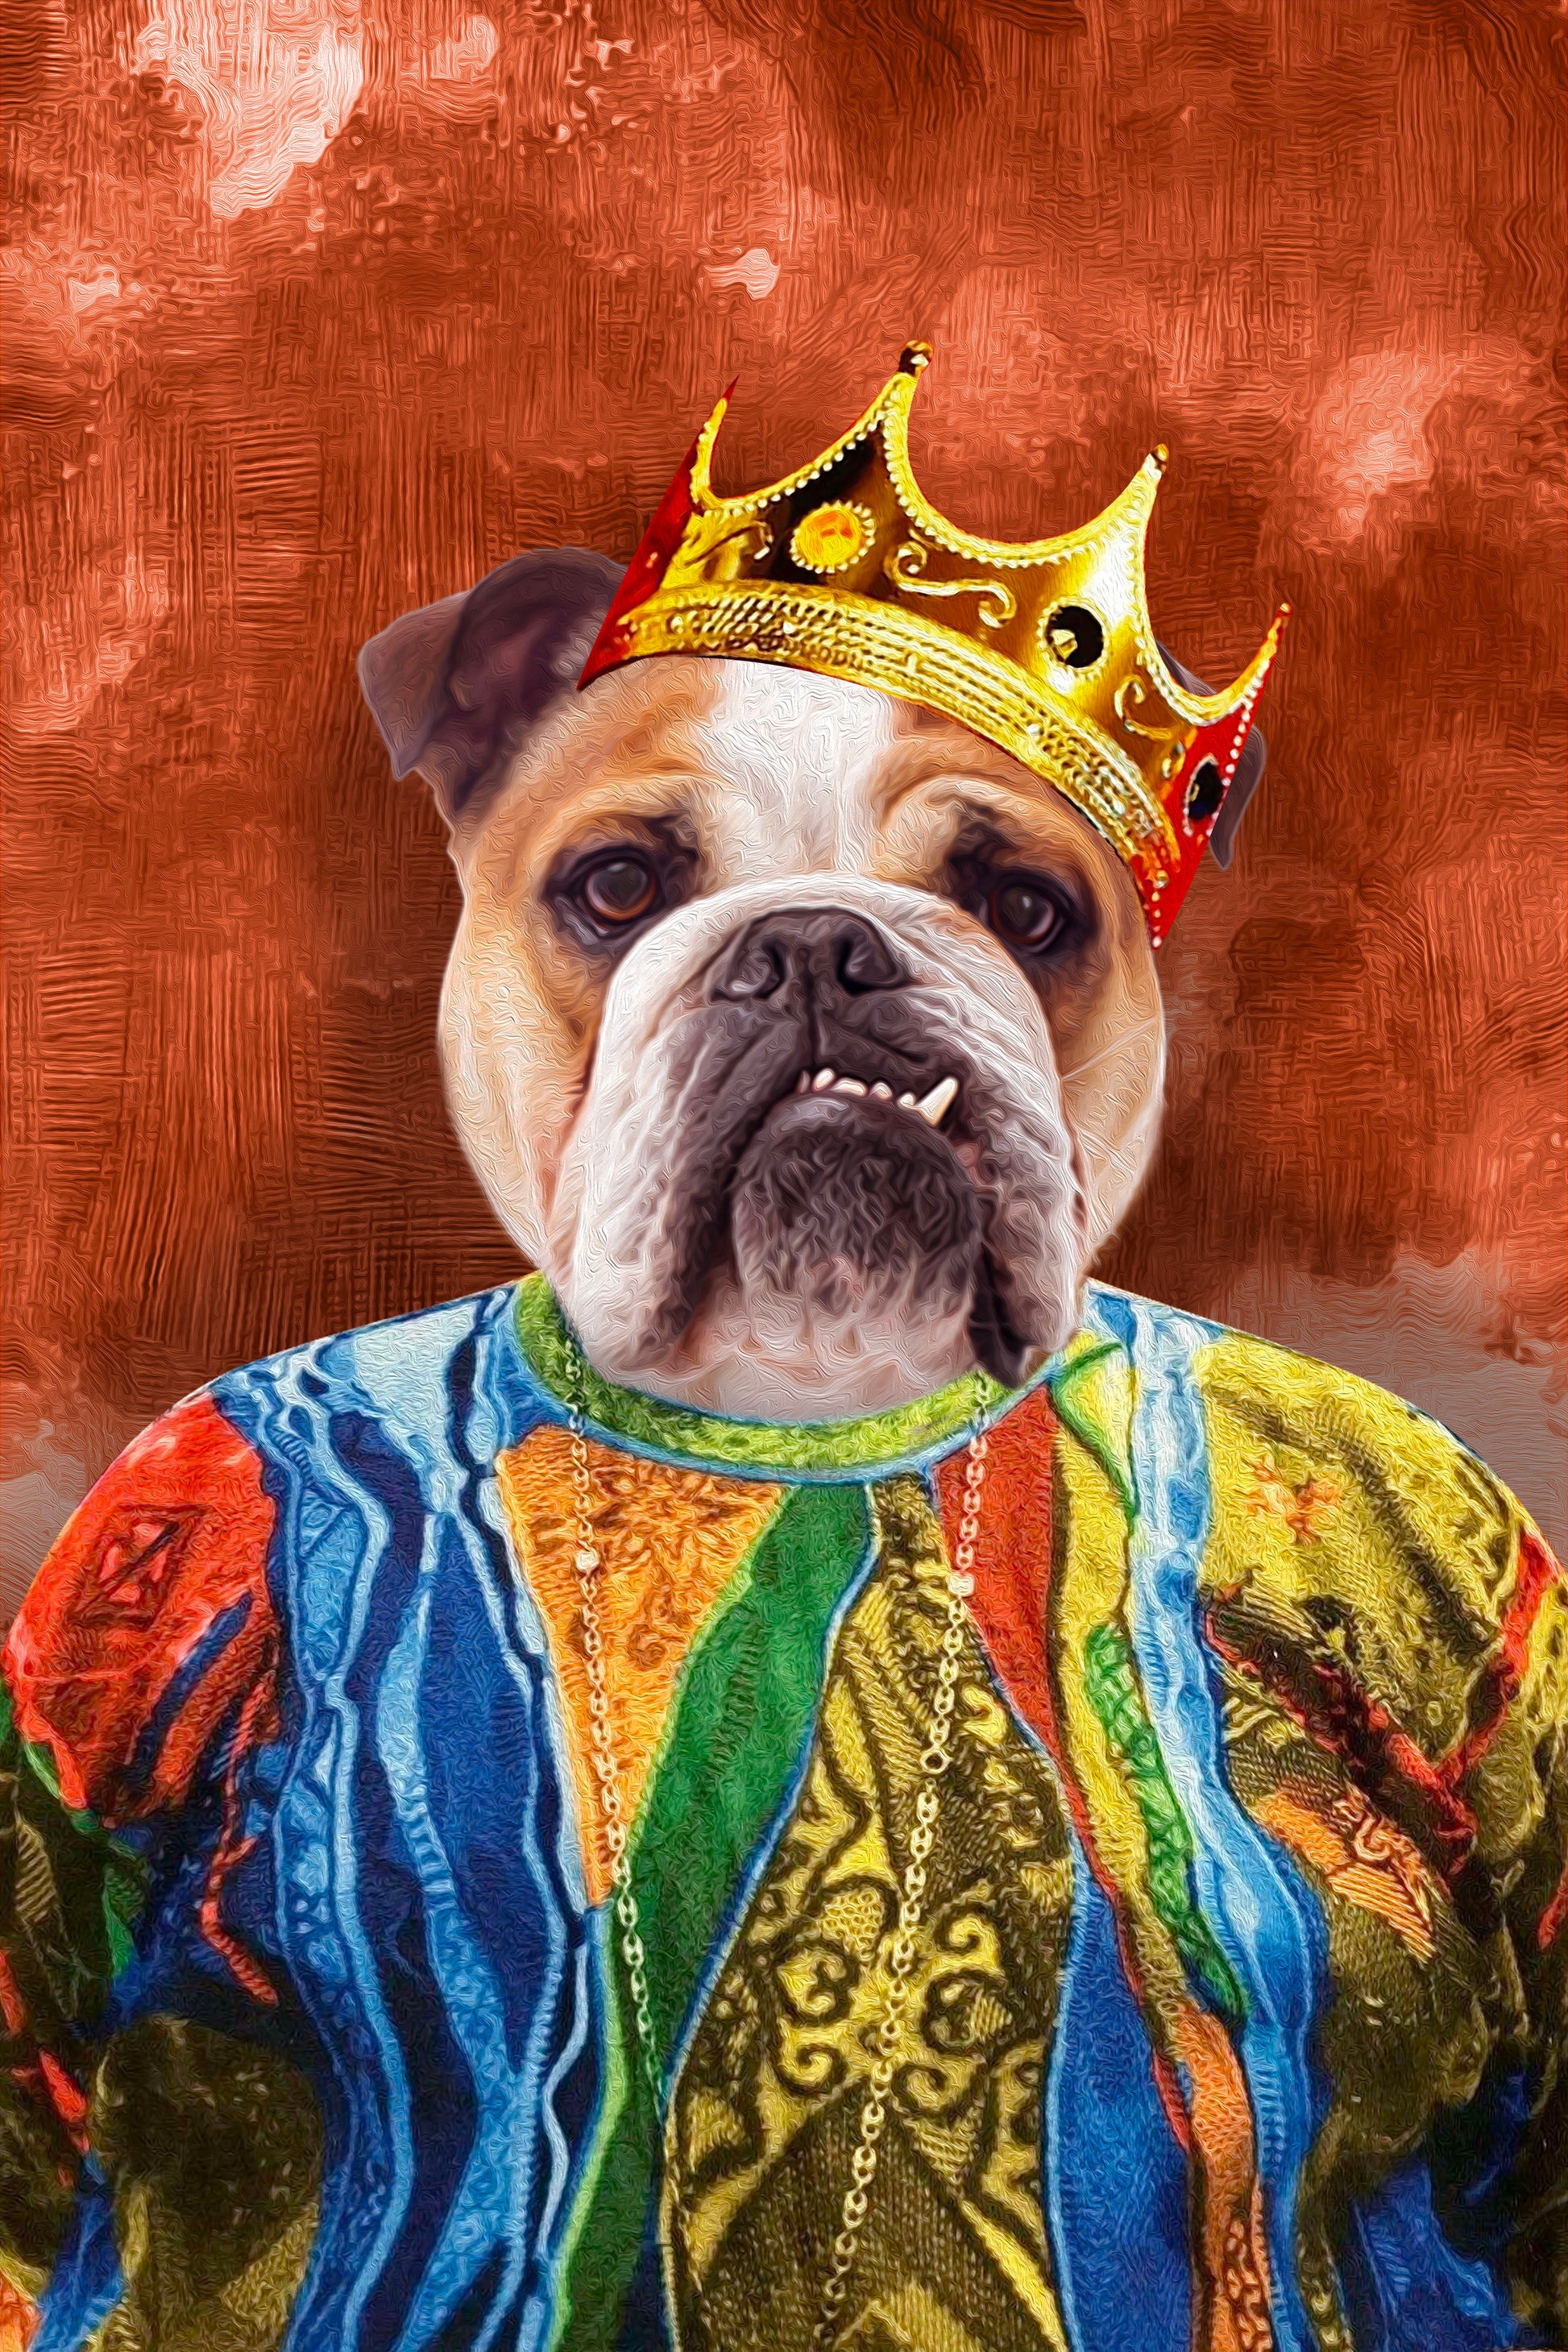 The Notorious Mr. Big Custom Pet Portrait Canvas - Noble Pawtrait